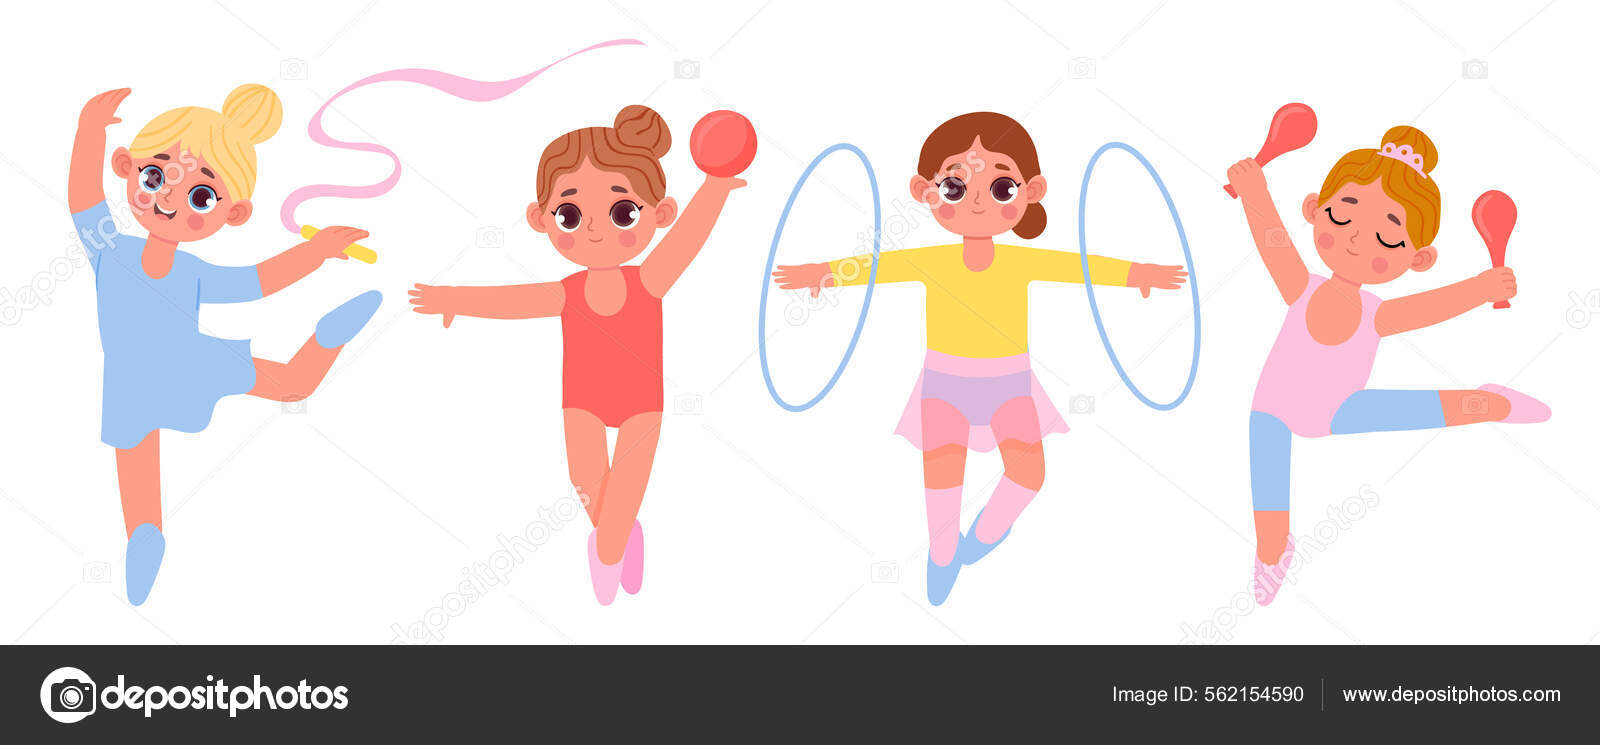 Dessin animé petites filles de gymnaste. Enfants faisant de l'exercice avec  cerceau, ballon et clubs. Enfants mignons ayant des entraînements  rythmiques de gymnase Vecteur par ©tartila.stock.gmail.com 562154590